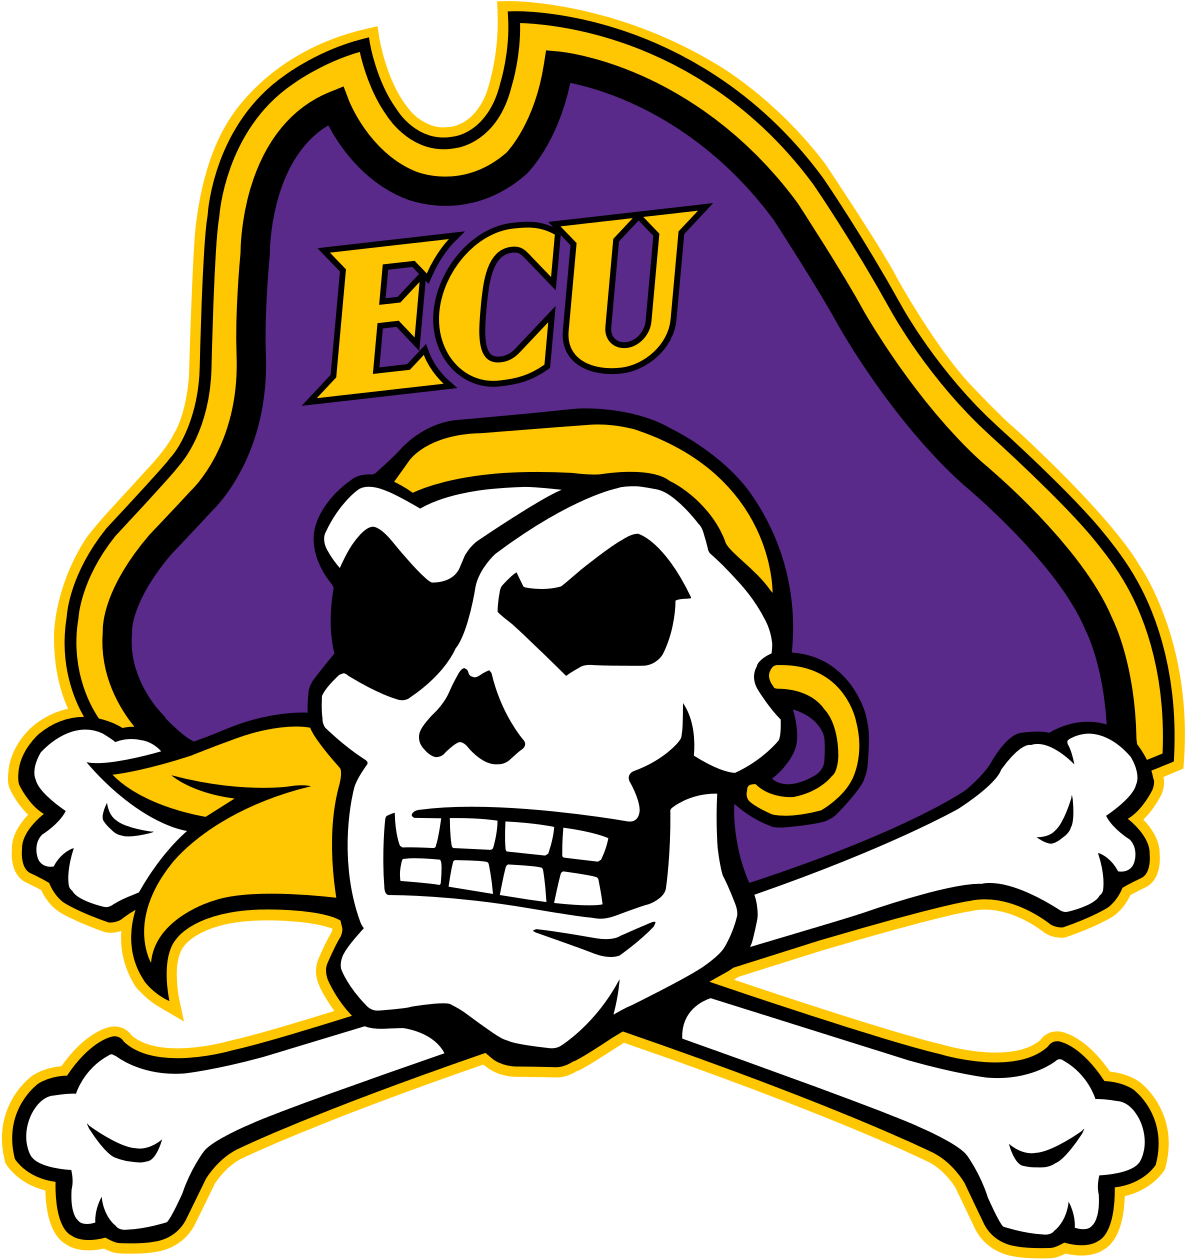 East Carolina Pirates - East Carolina University Logo (1200x1277)